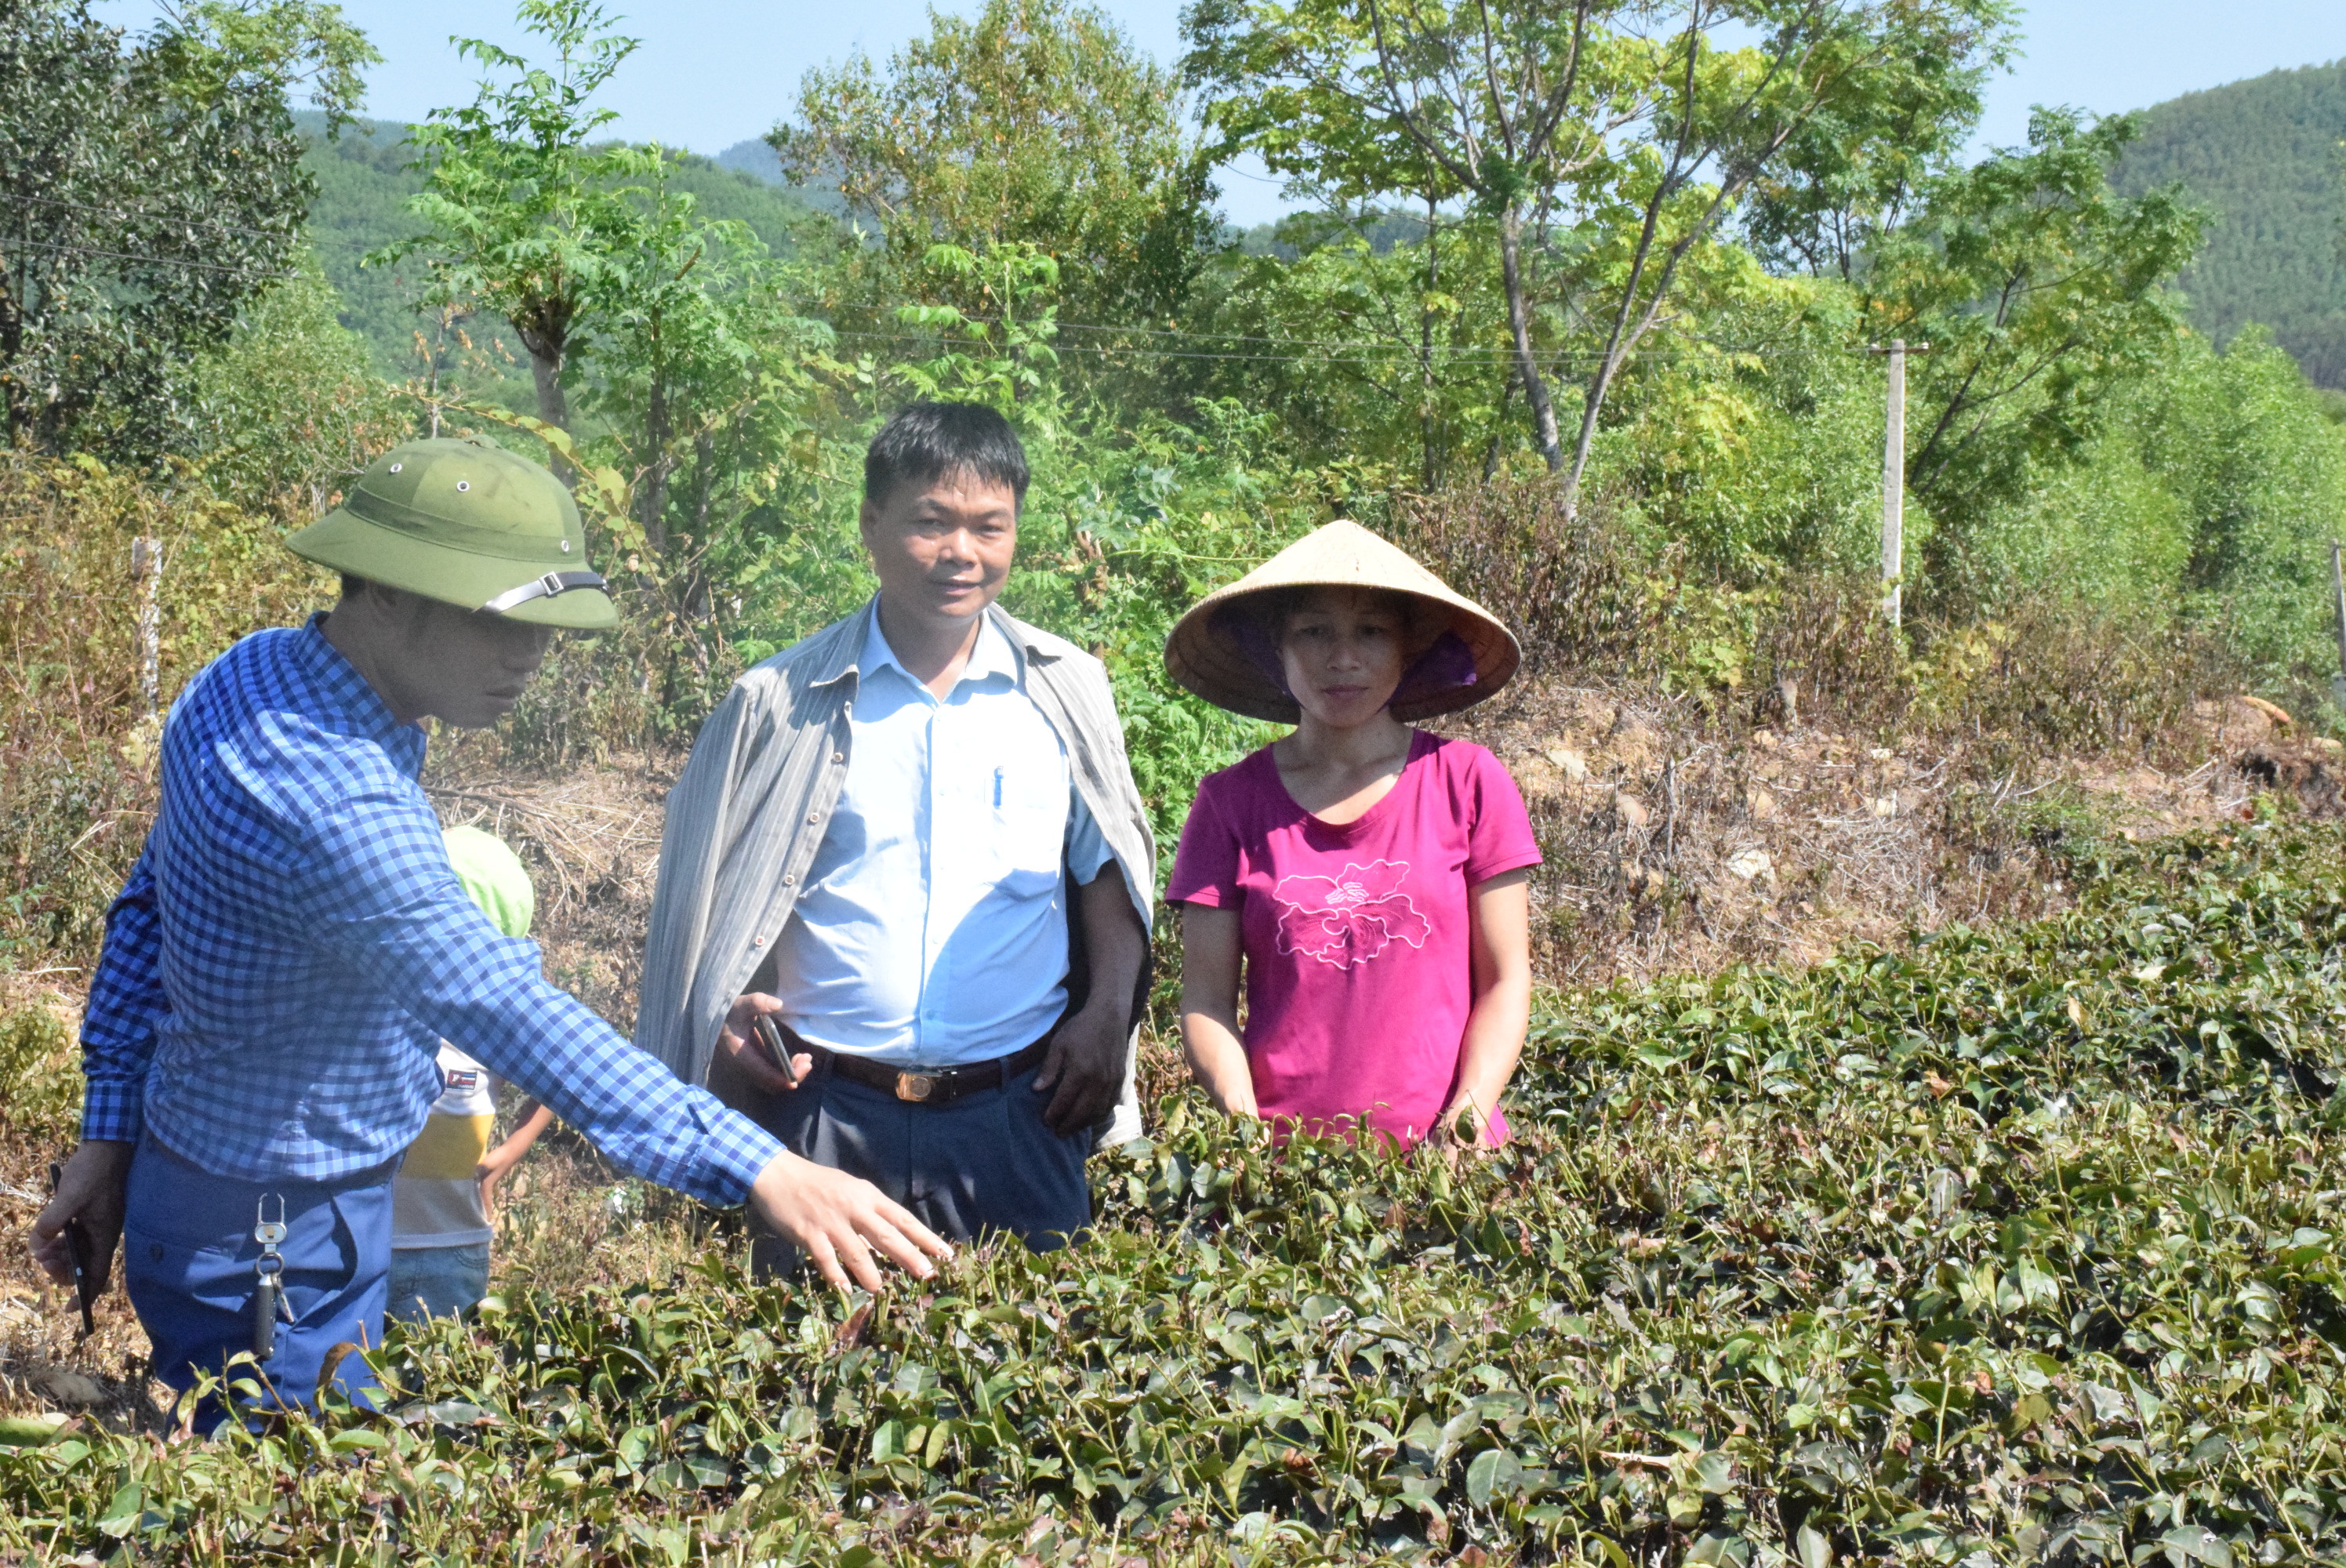  Cán bộ nông nghiệp huyện Thanh Chương kiểm tra hạn hán trên cây chè tại xã Thanh Mai. Ảnh: Xuân Hoàng